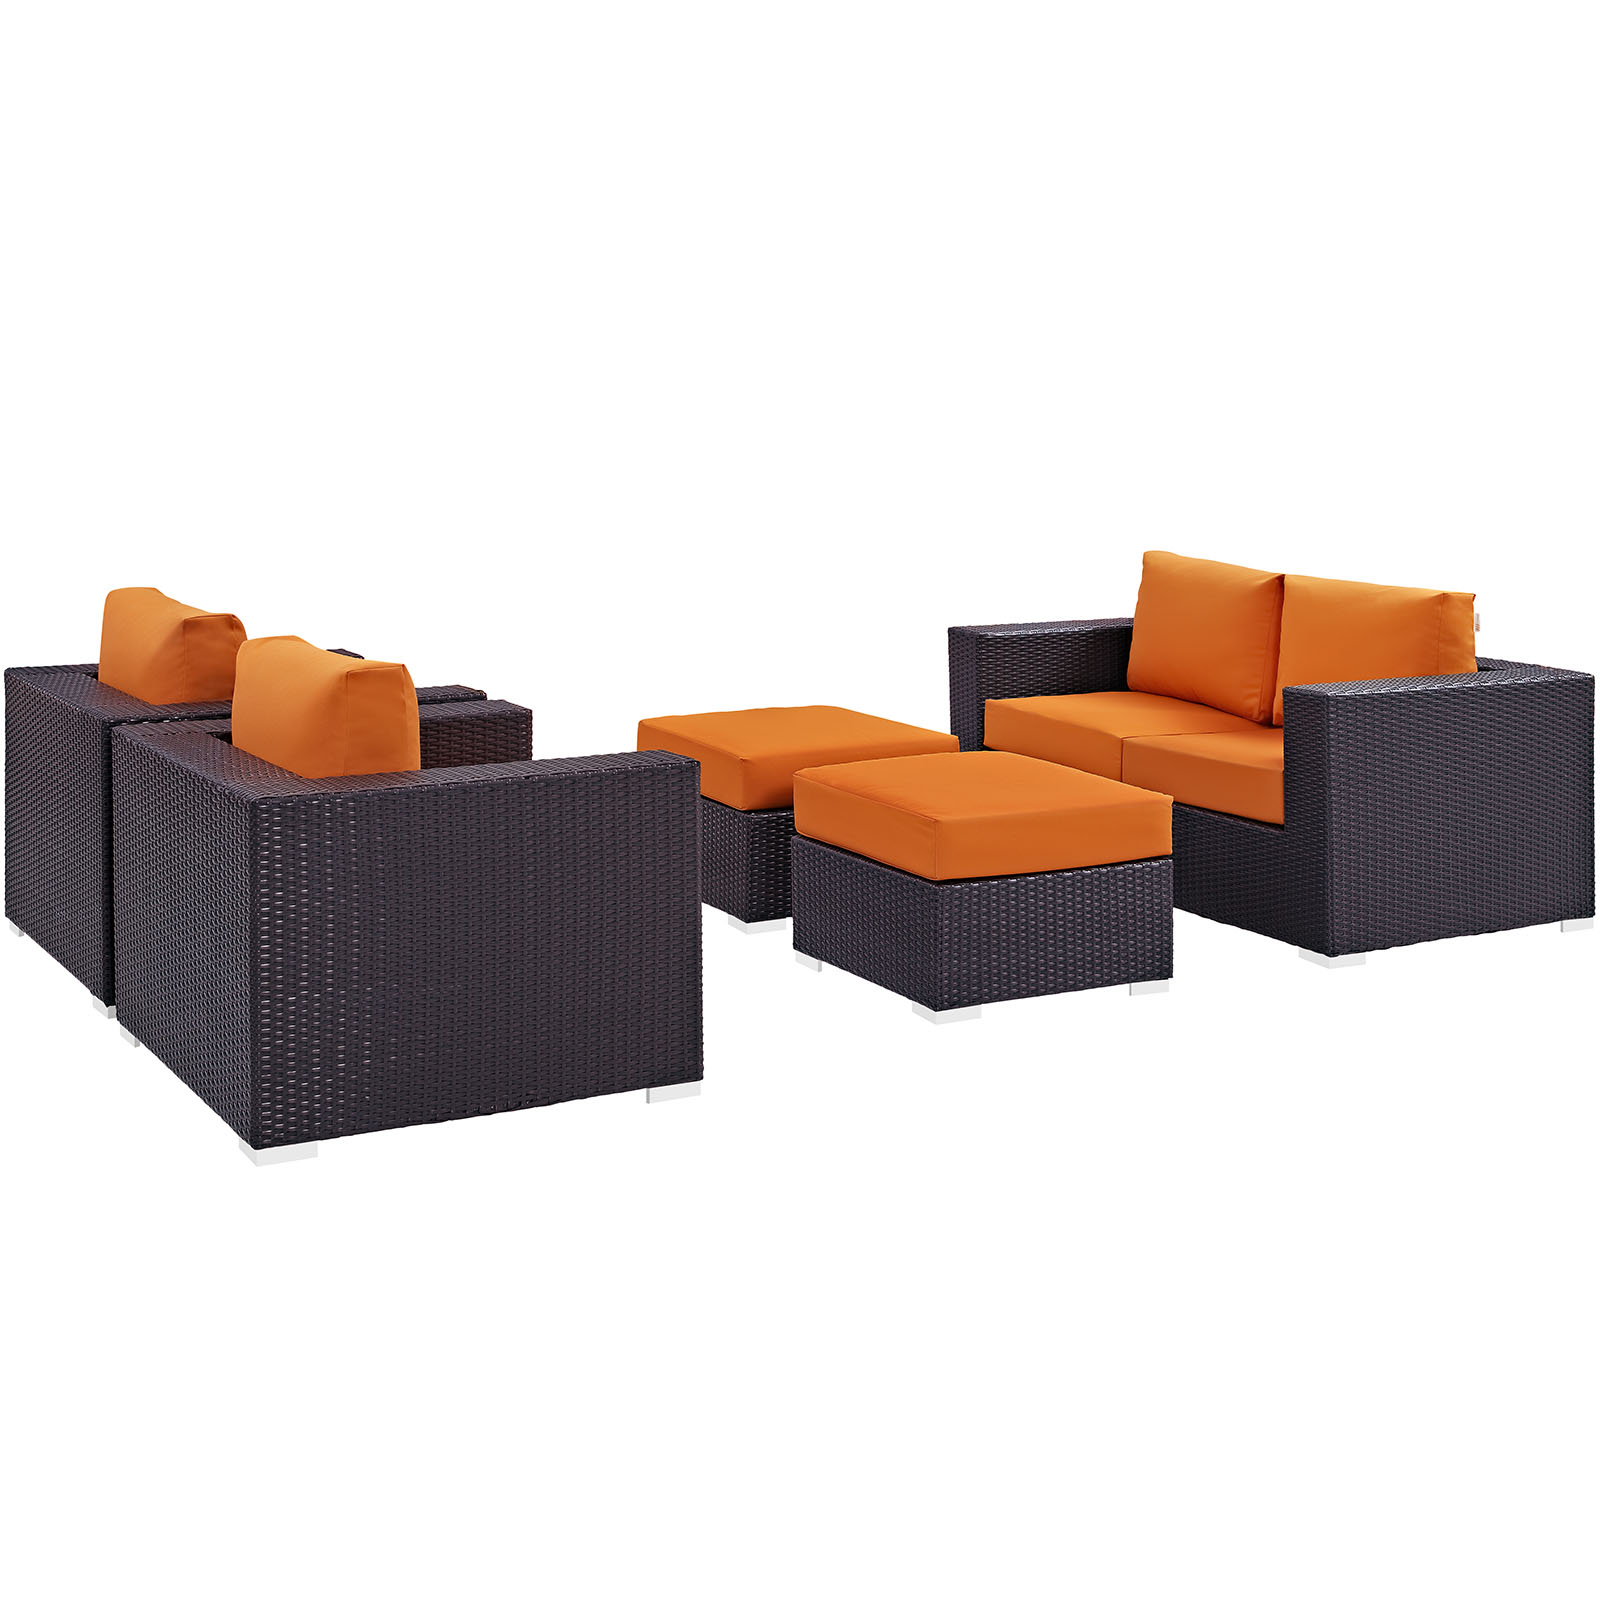 Modway Convene 5 Piece Outdoor Patio Sofa Set in Espresso Orange - image 3 of 7